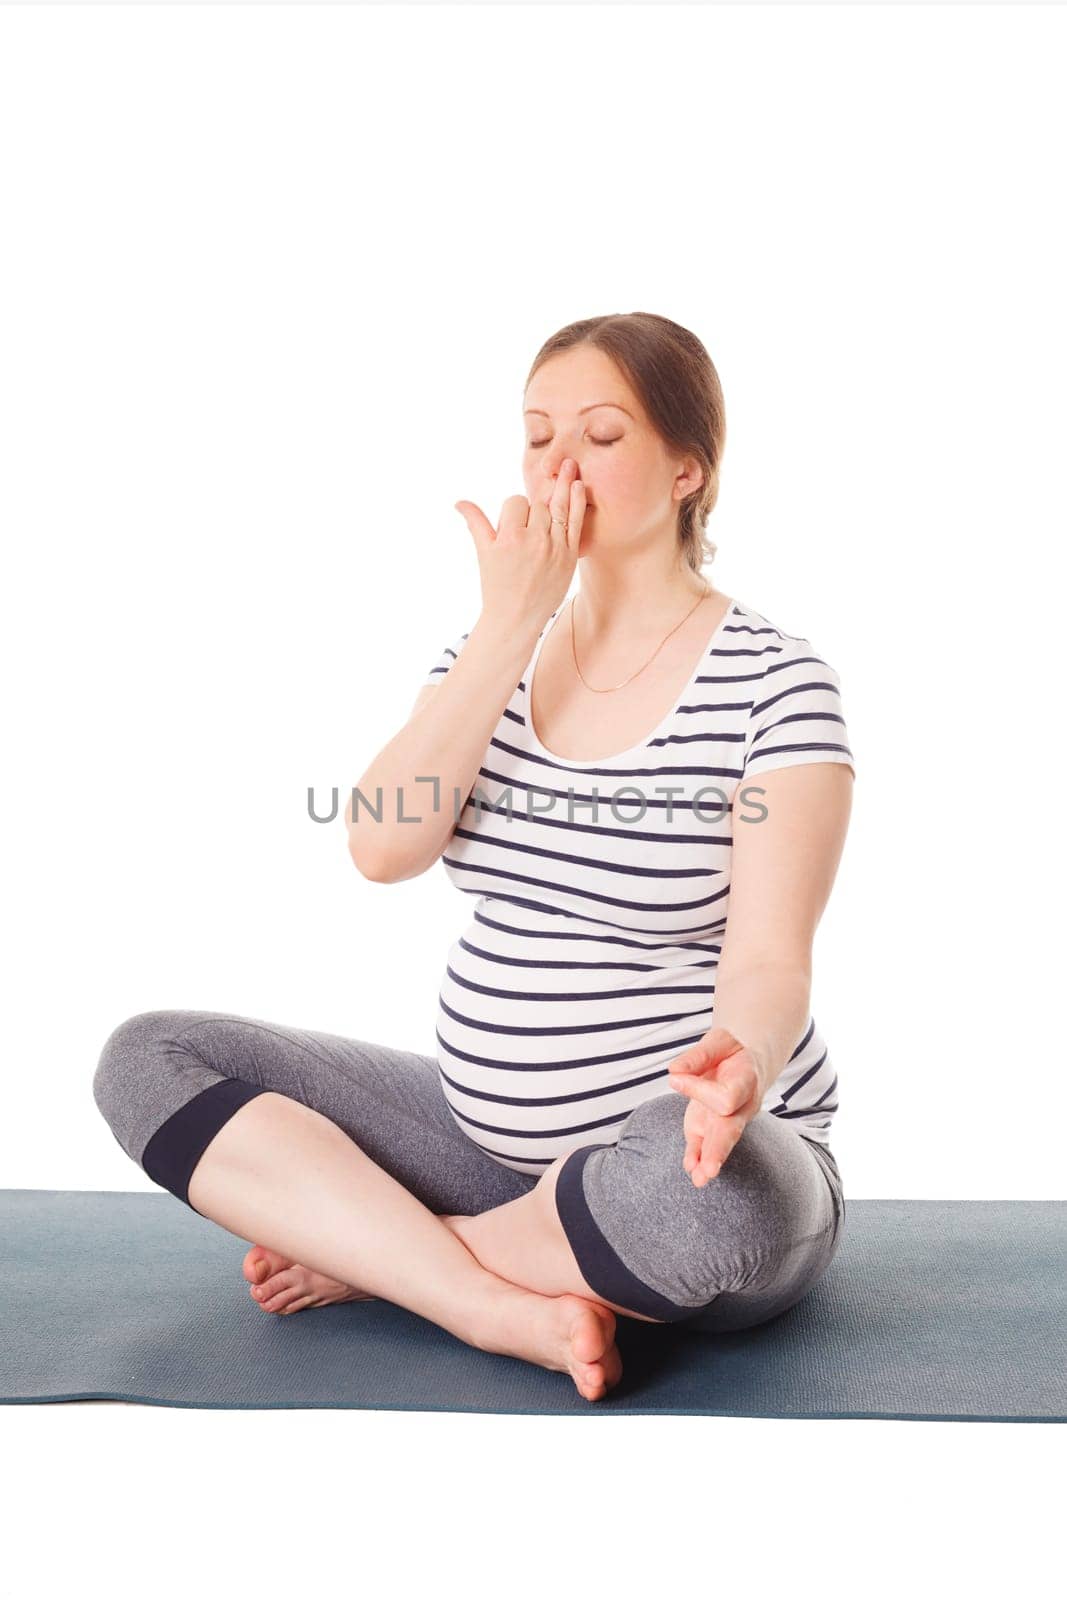 Pregnancy yoga exercise - pregnant woman doing yoga breathing exercise Pranayama isolated on white background